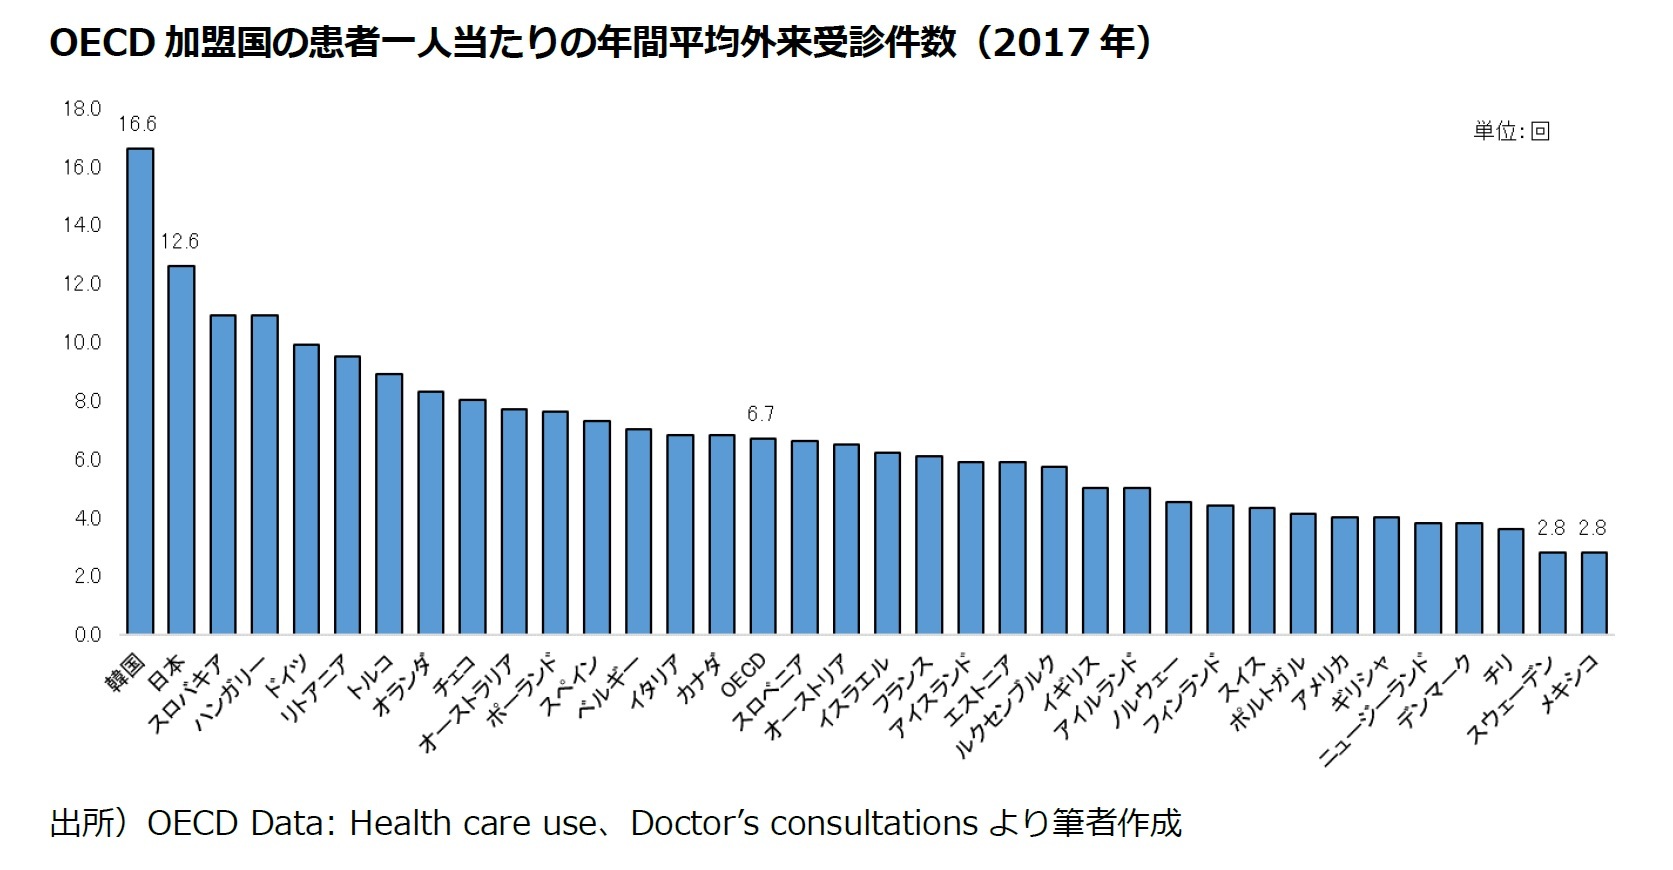 OECD加盟国の患者一人当たりの年間平均外来受診件数（2017年）